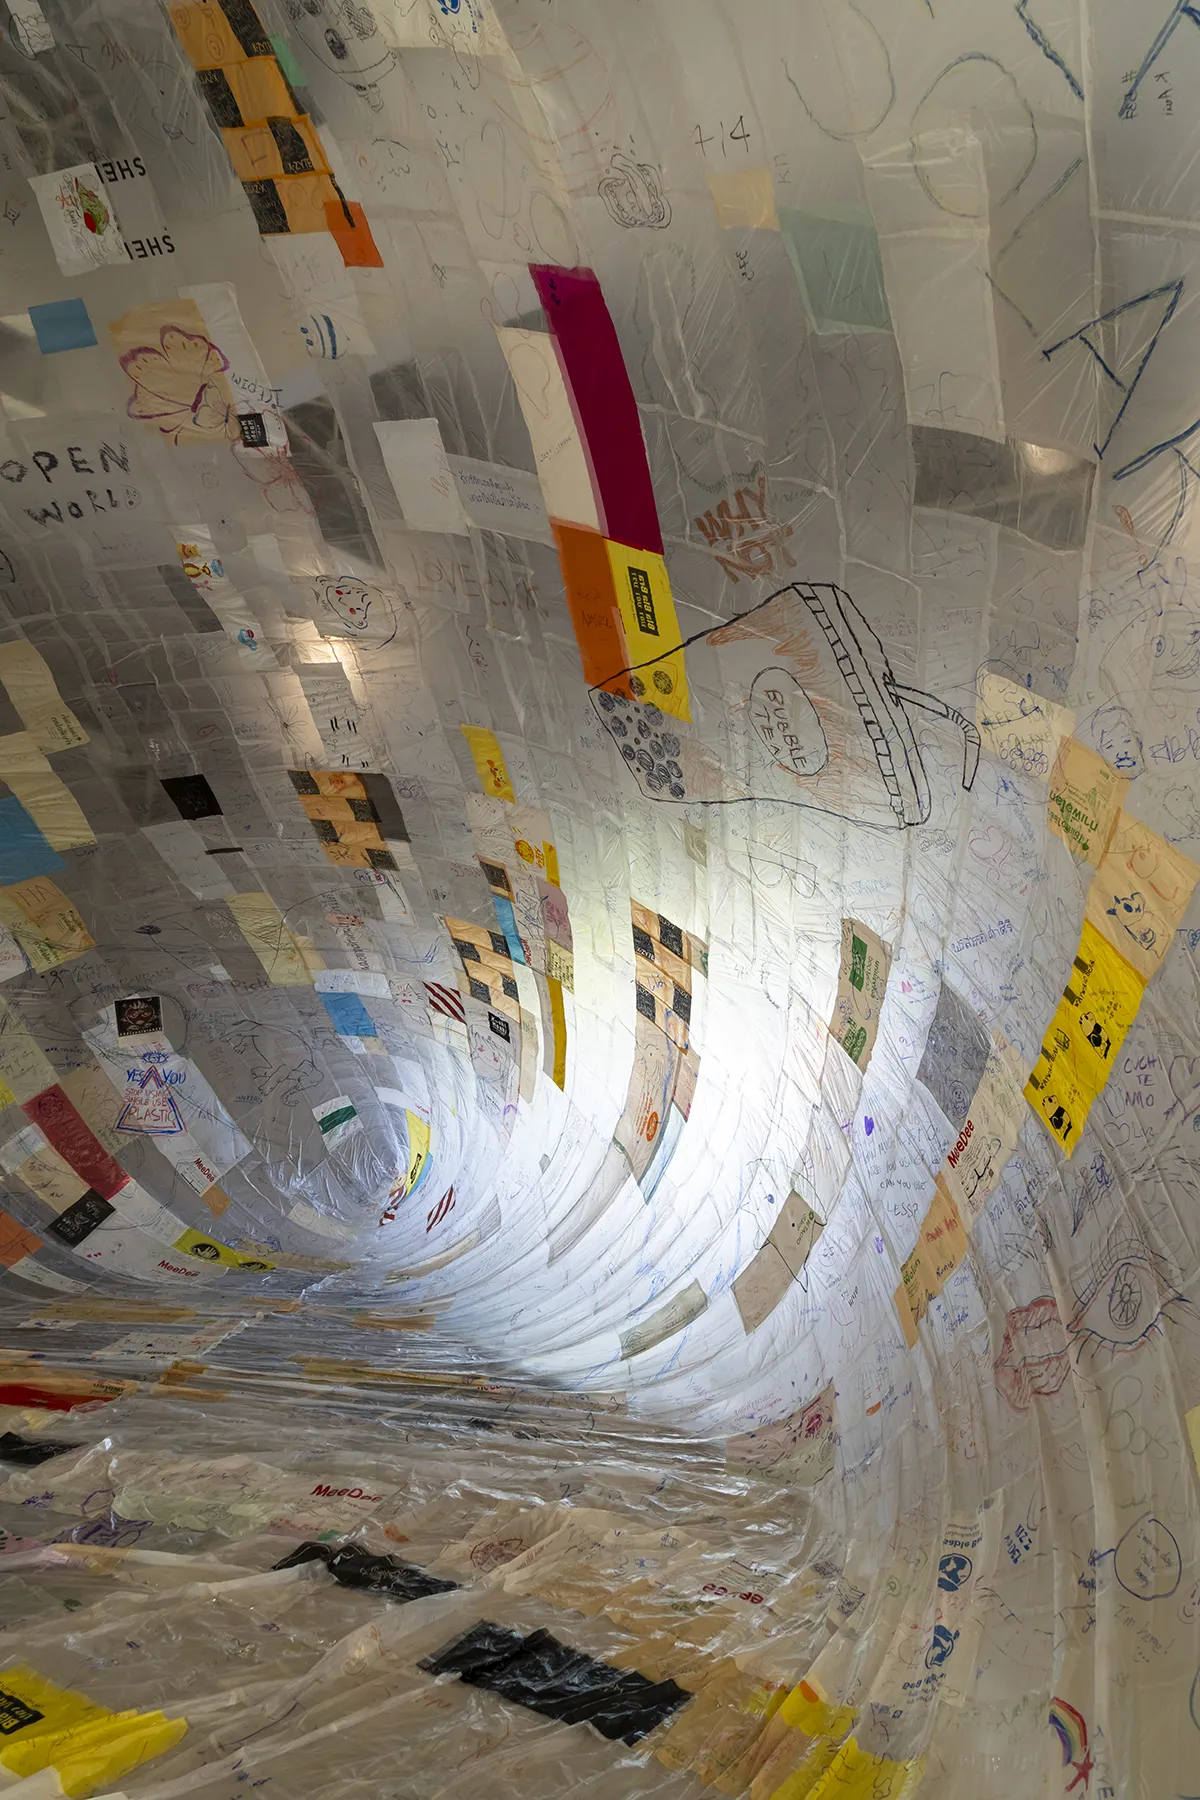 ภายใน “Museo Aero Solar” บอลลูนยักษ์พลาสติก ผลงานของคุณโทมัส ซาราเซโน (Tomas Saraceno)